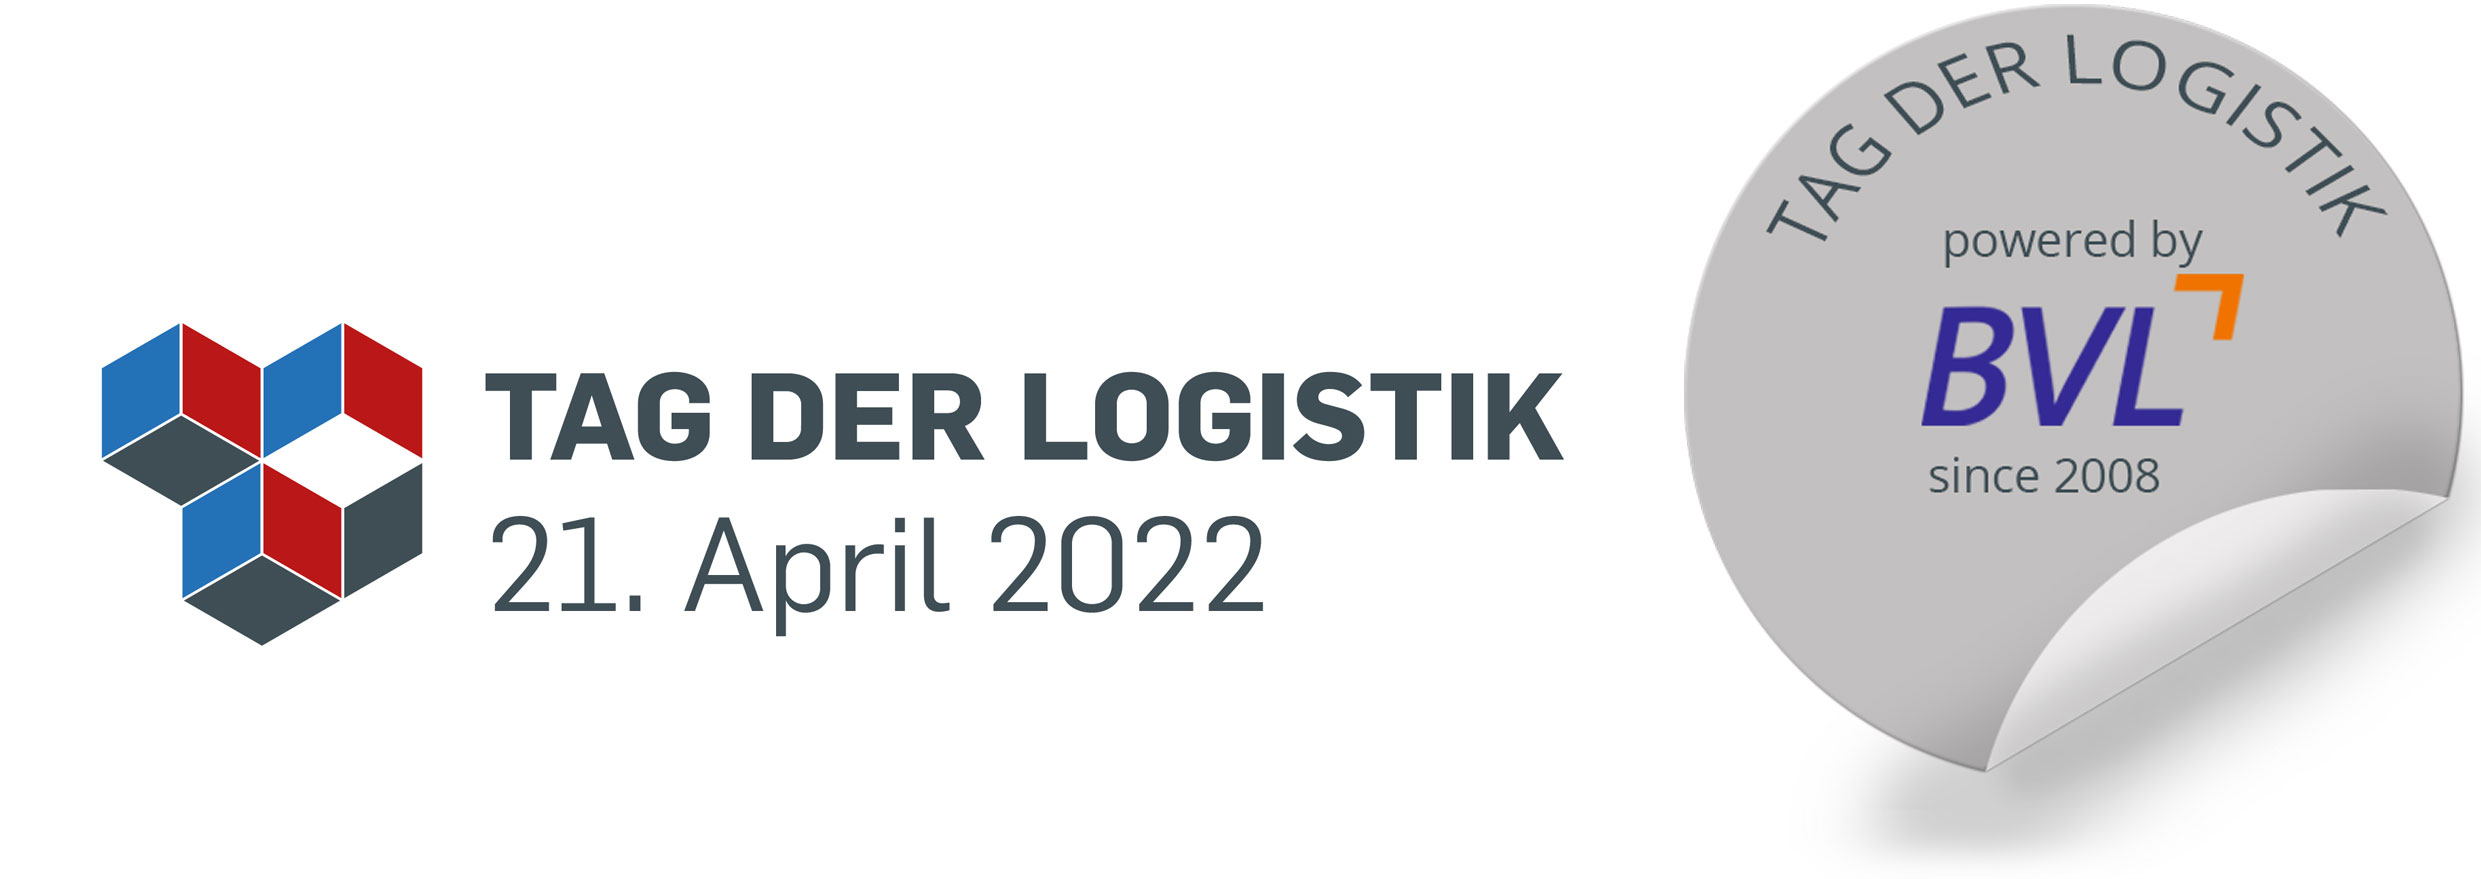 Tag der Logistik 2015